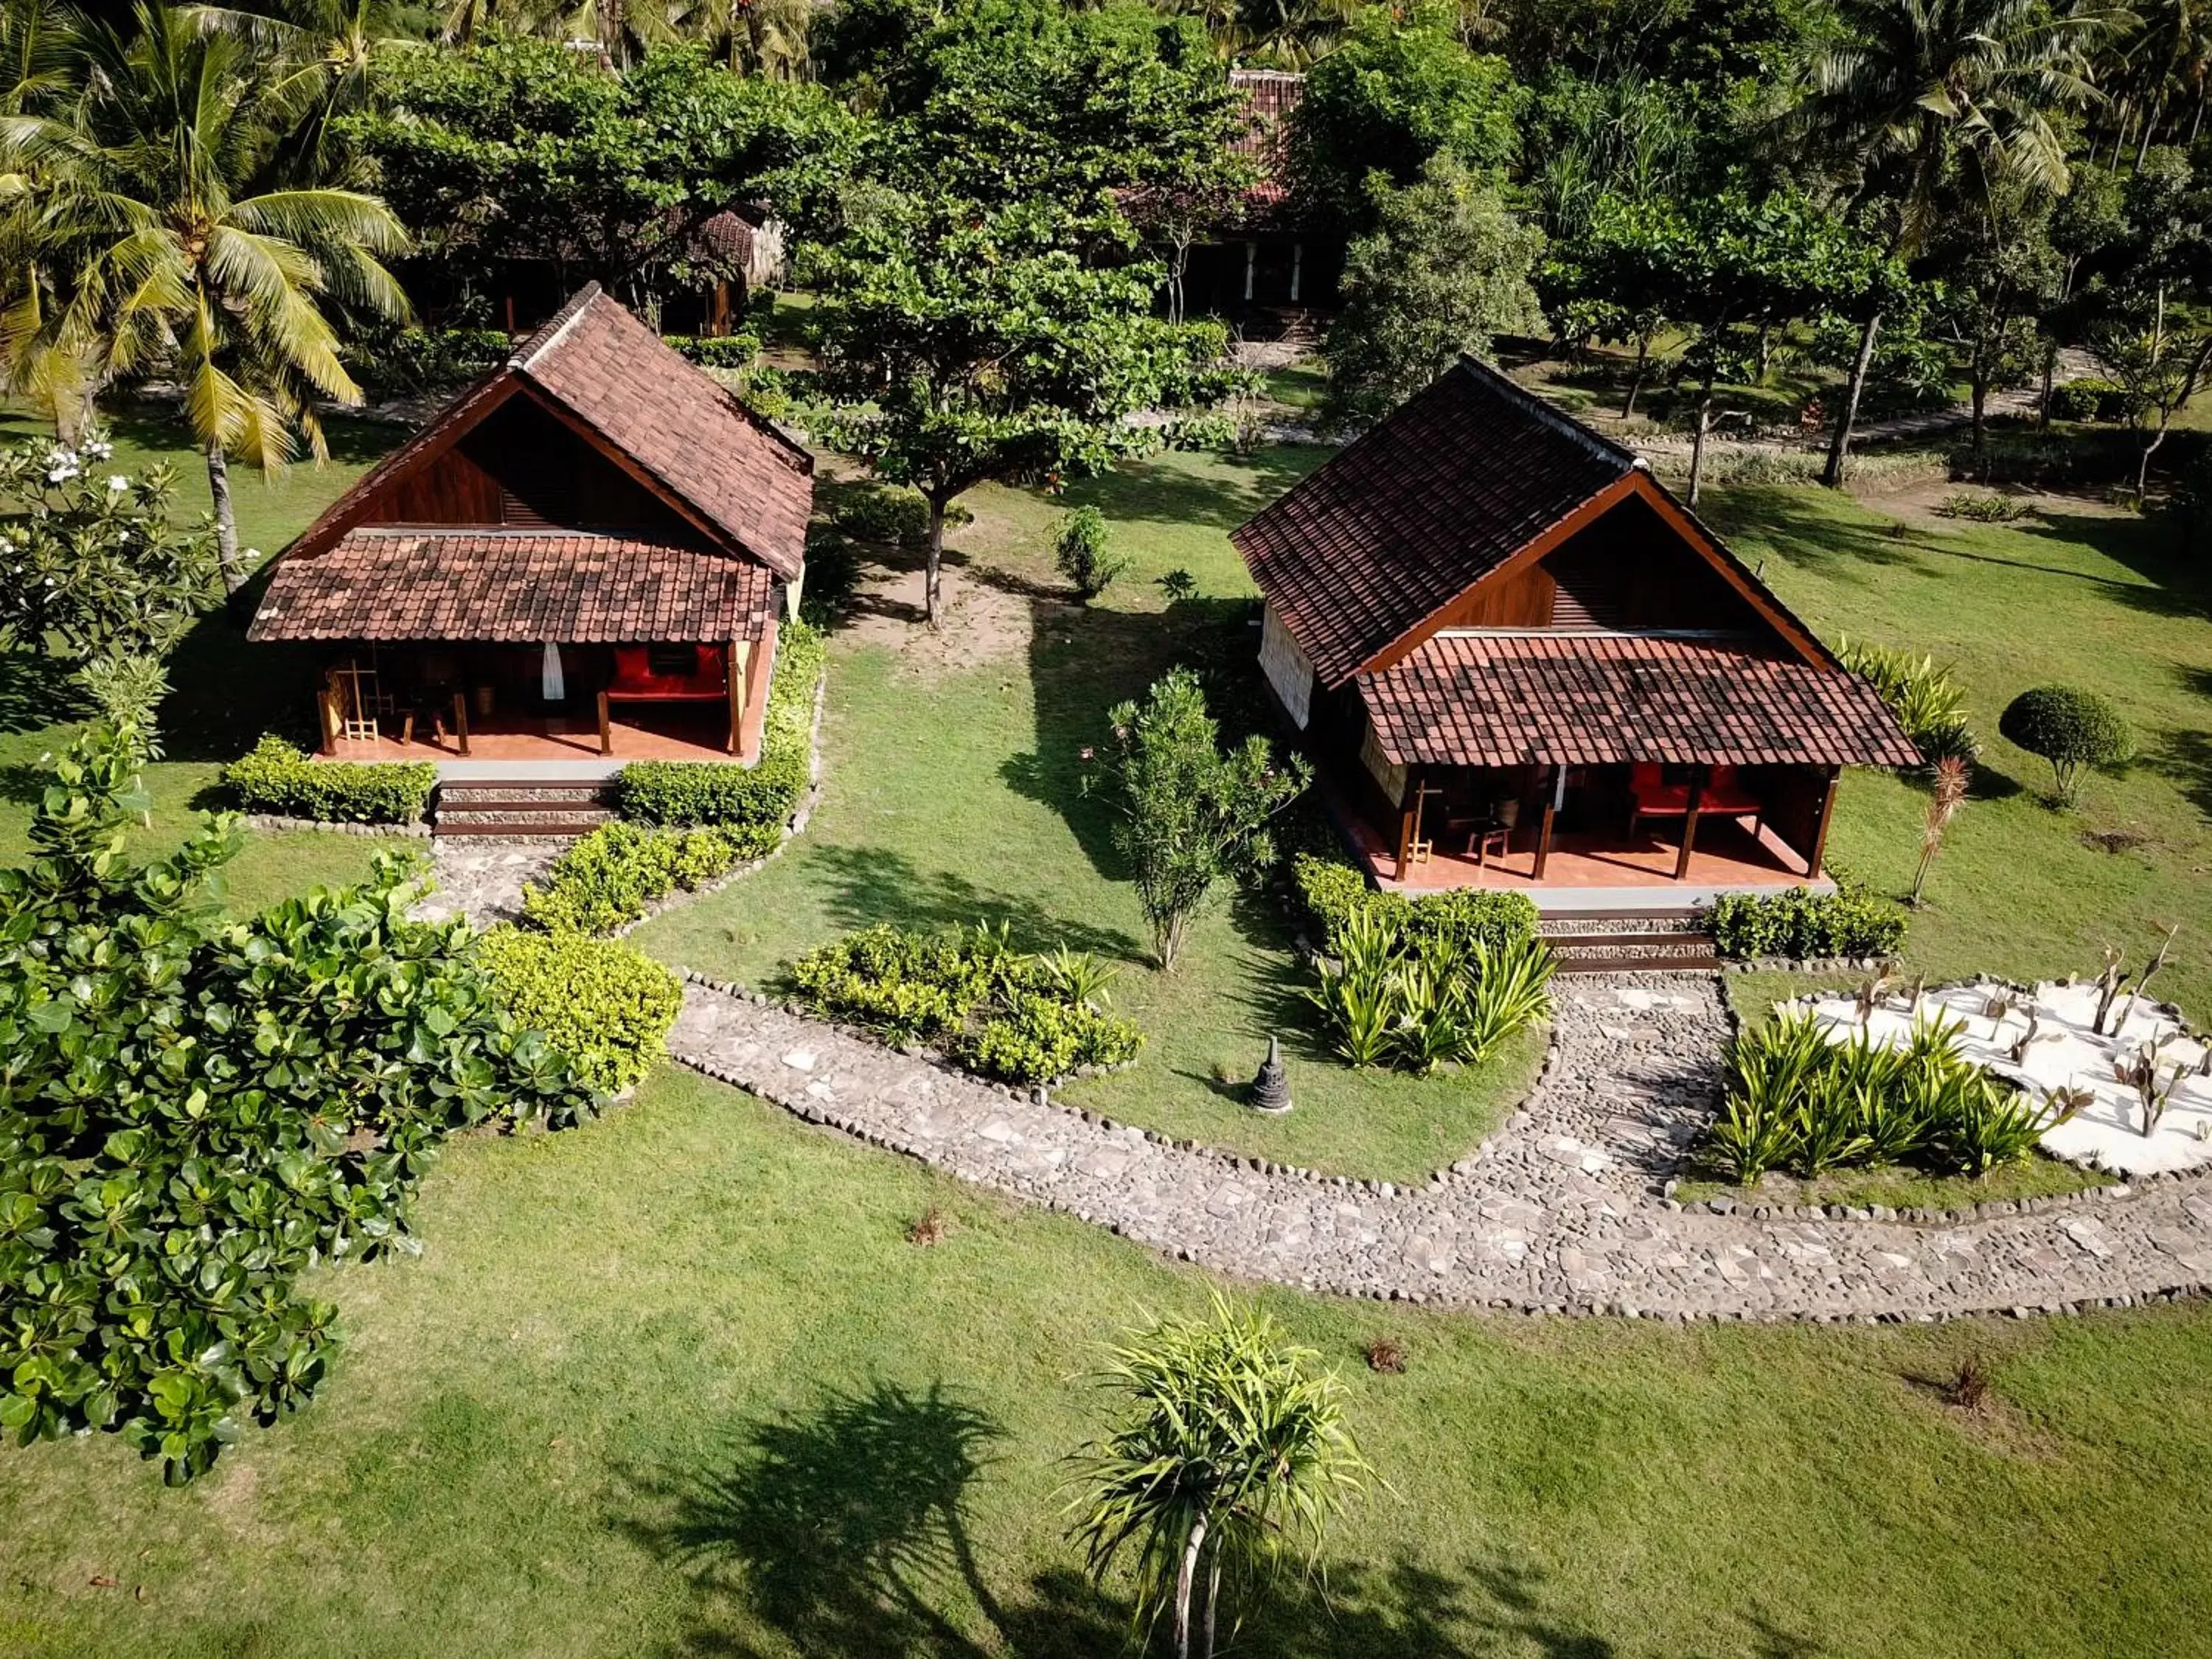 Bird's eye view, Property Building in Desa Dunia Beda Resort